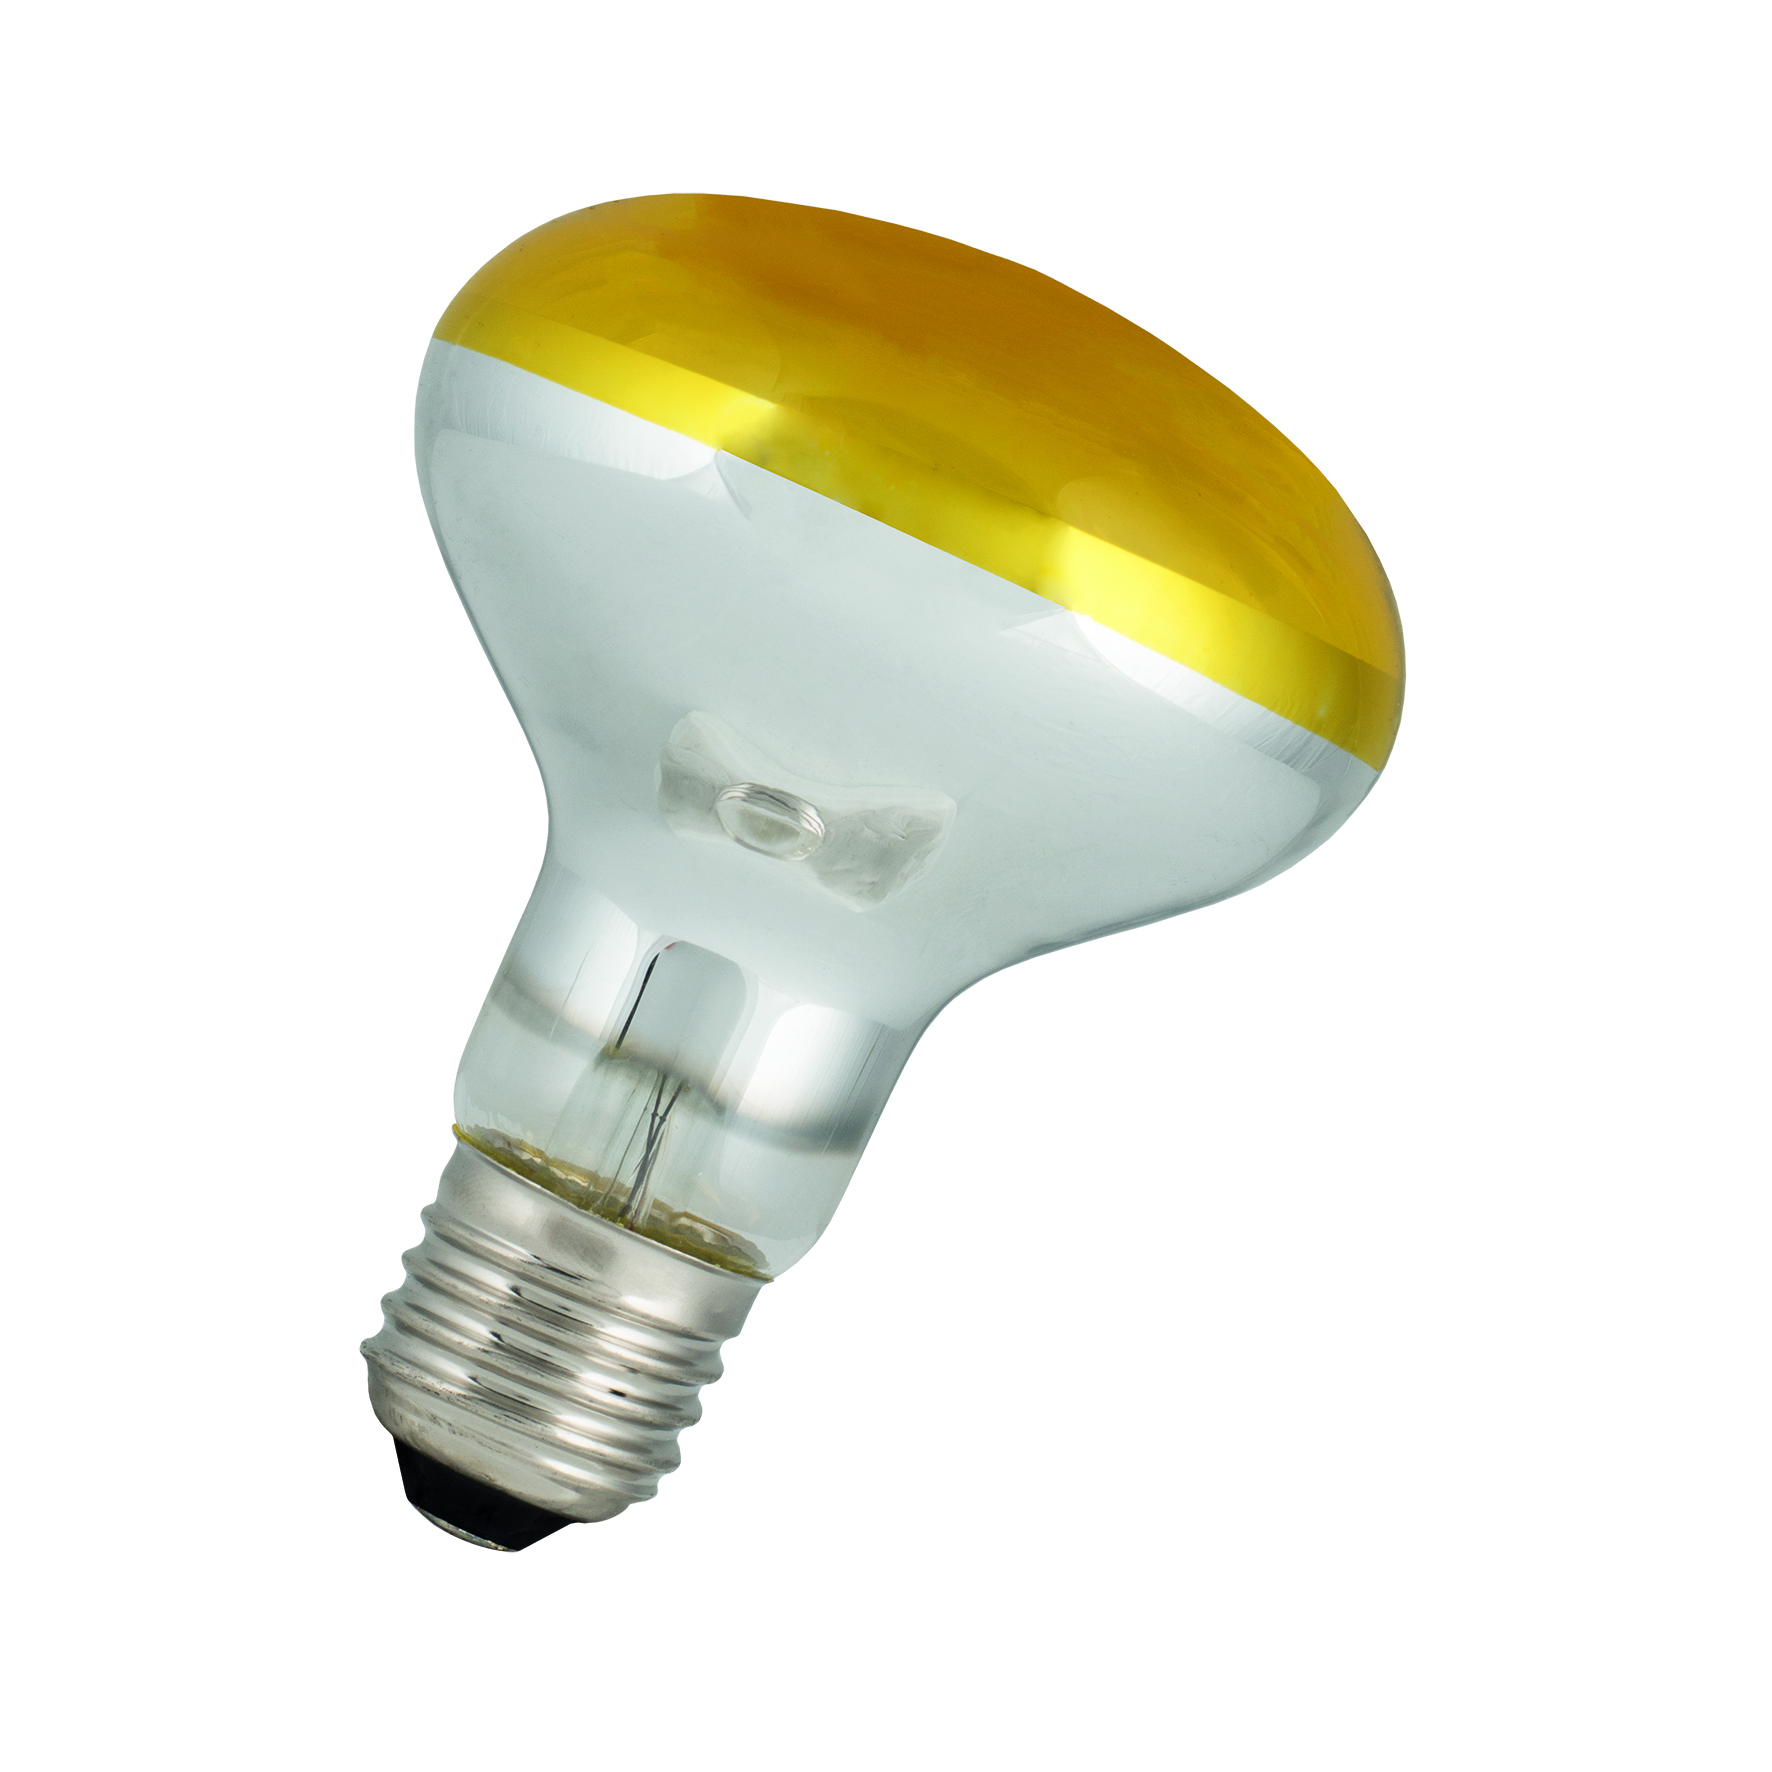 LED FIL R80 E27 4W Yellow